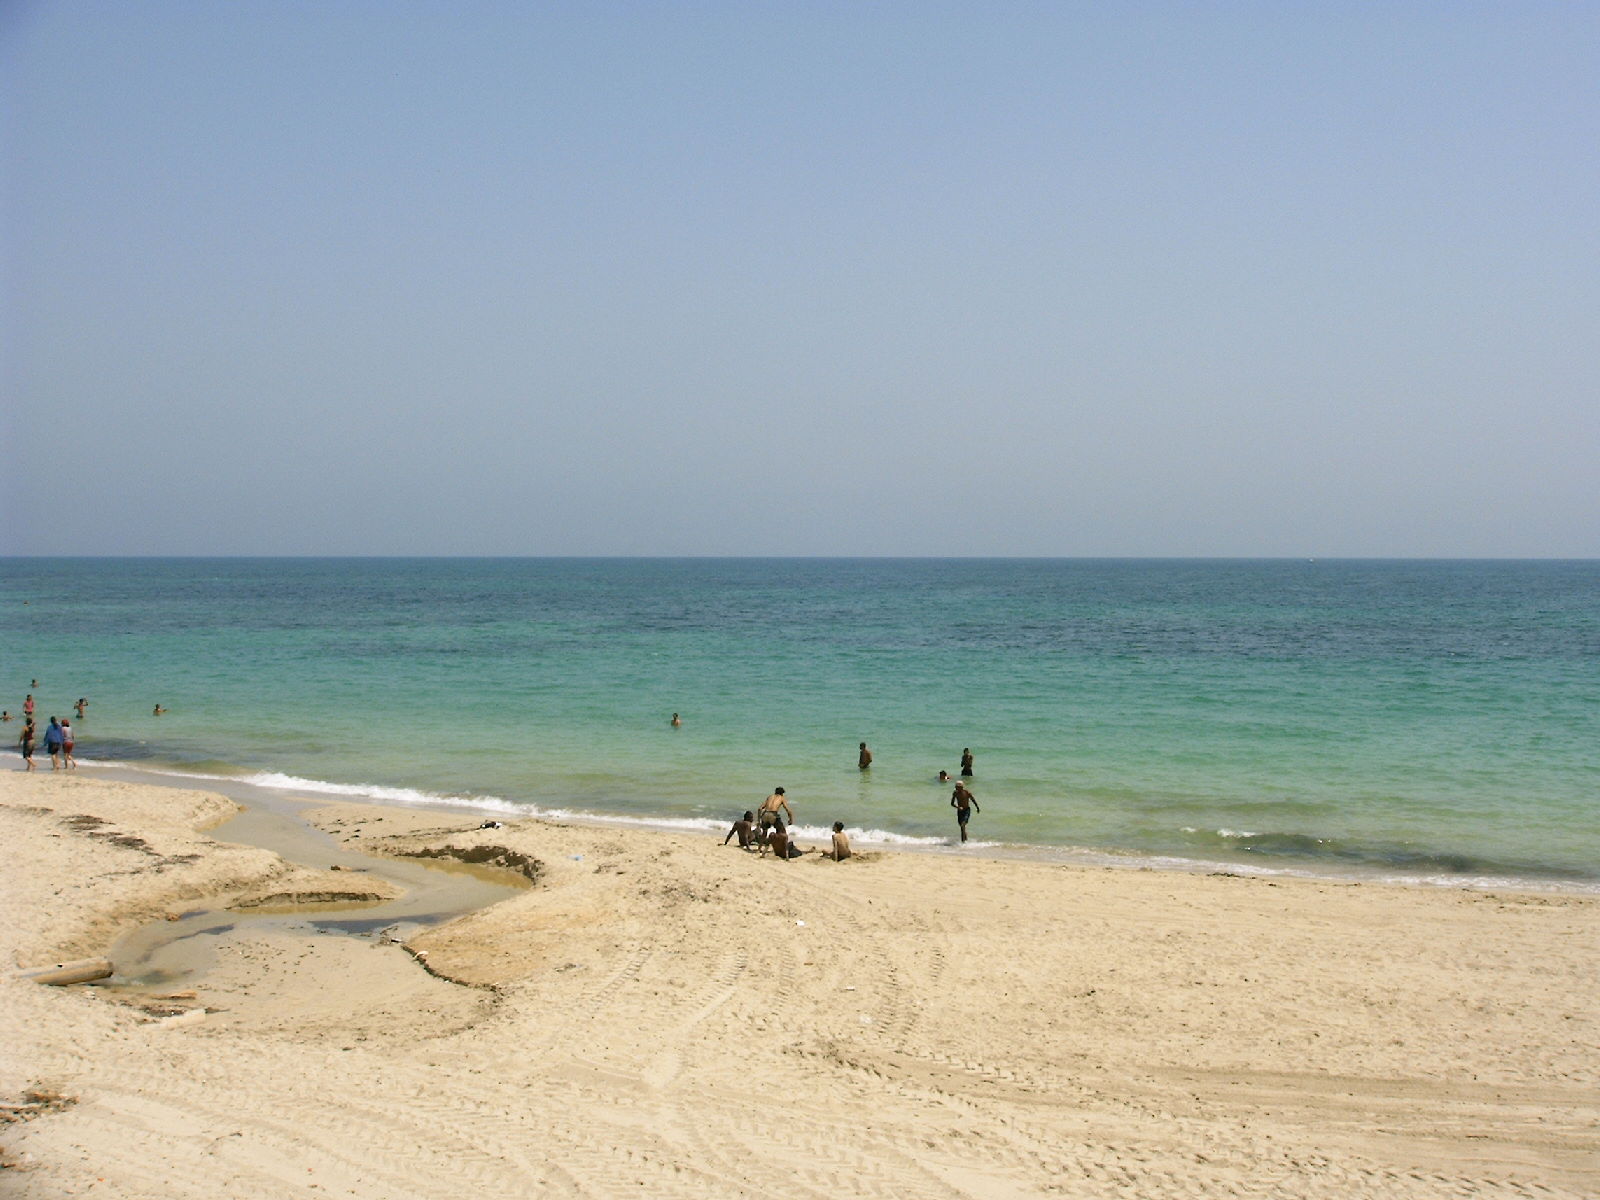 Zdjęcie Al-Swehel beach z przestronna zatoka